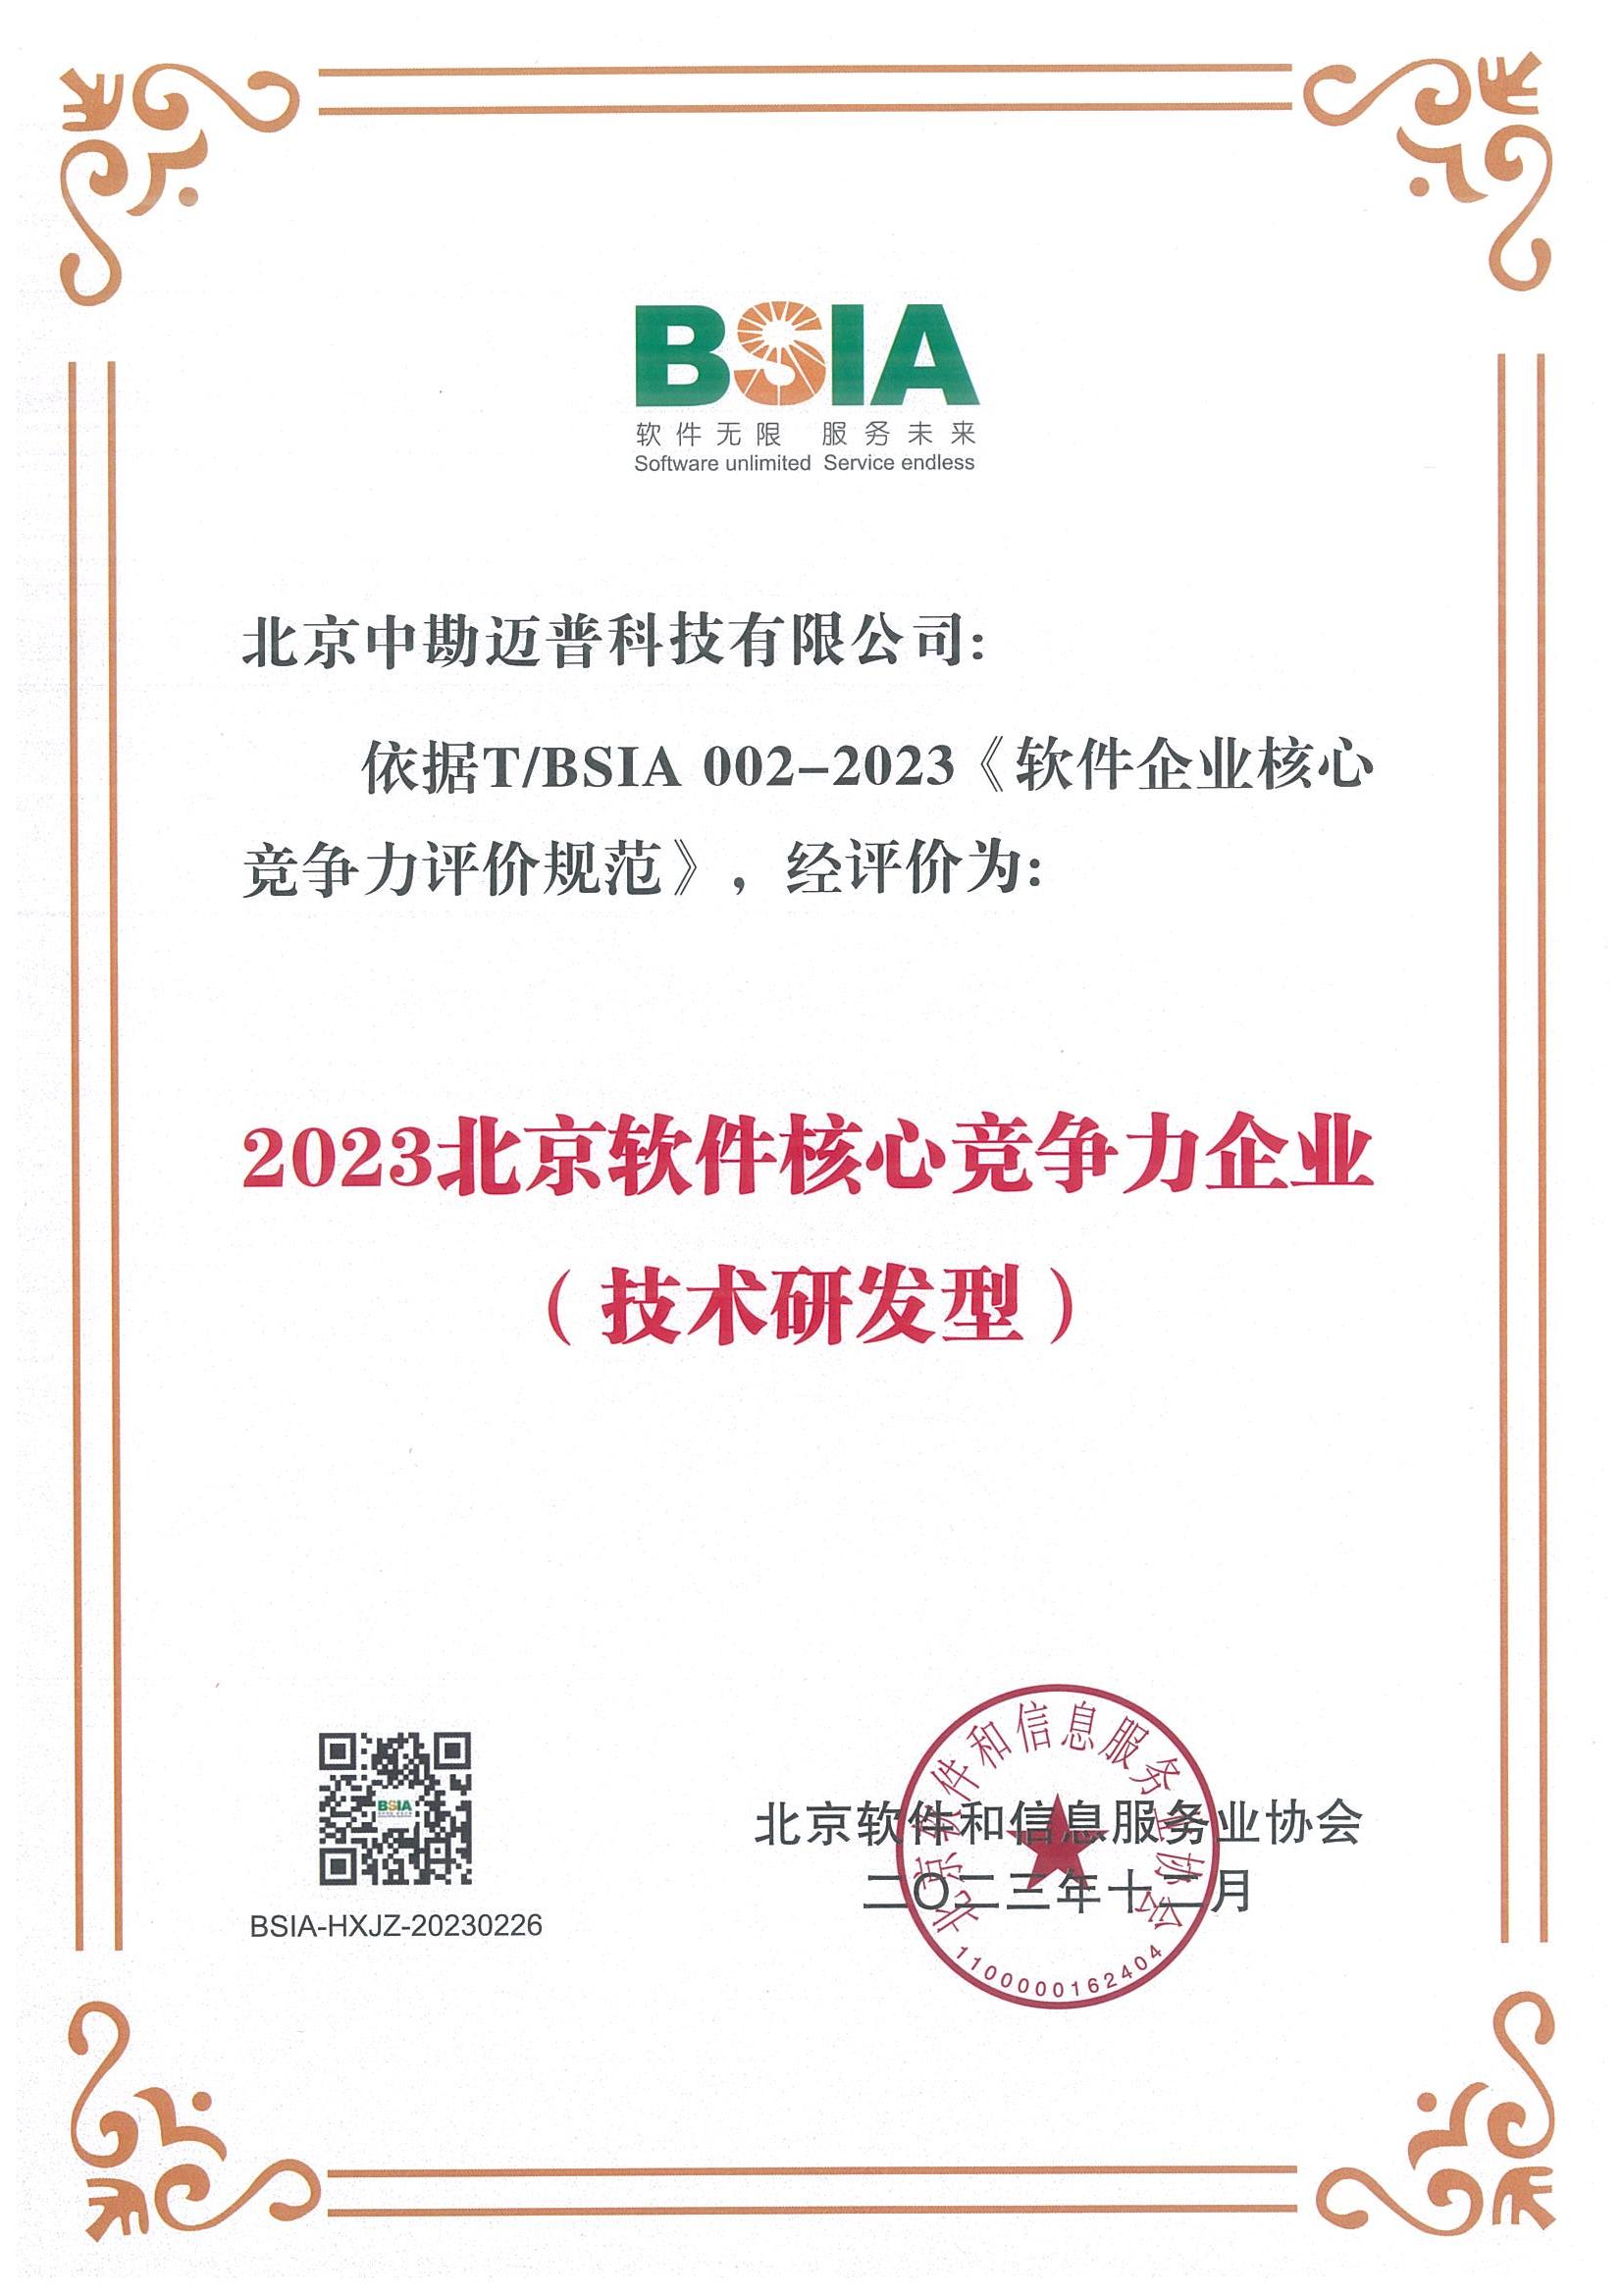 【公司资质】2023年北京软件核心竞争力企业（技术研发型）.jpg